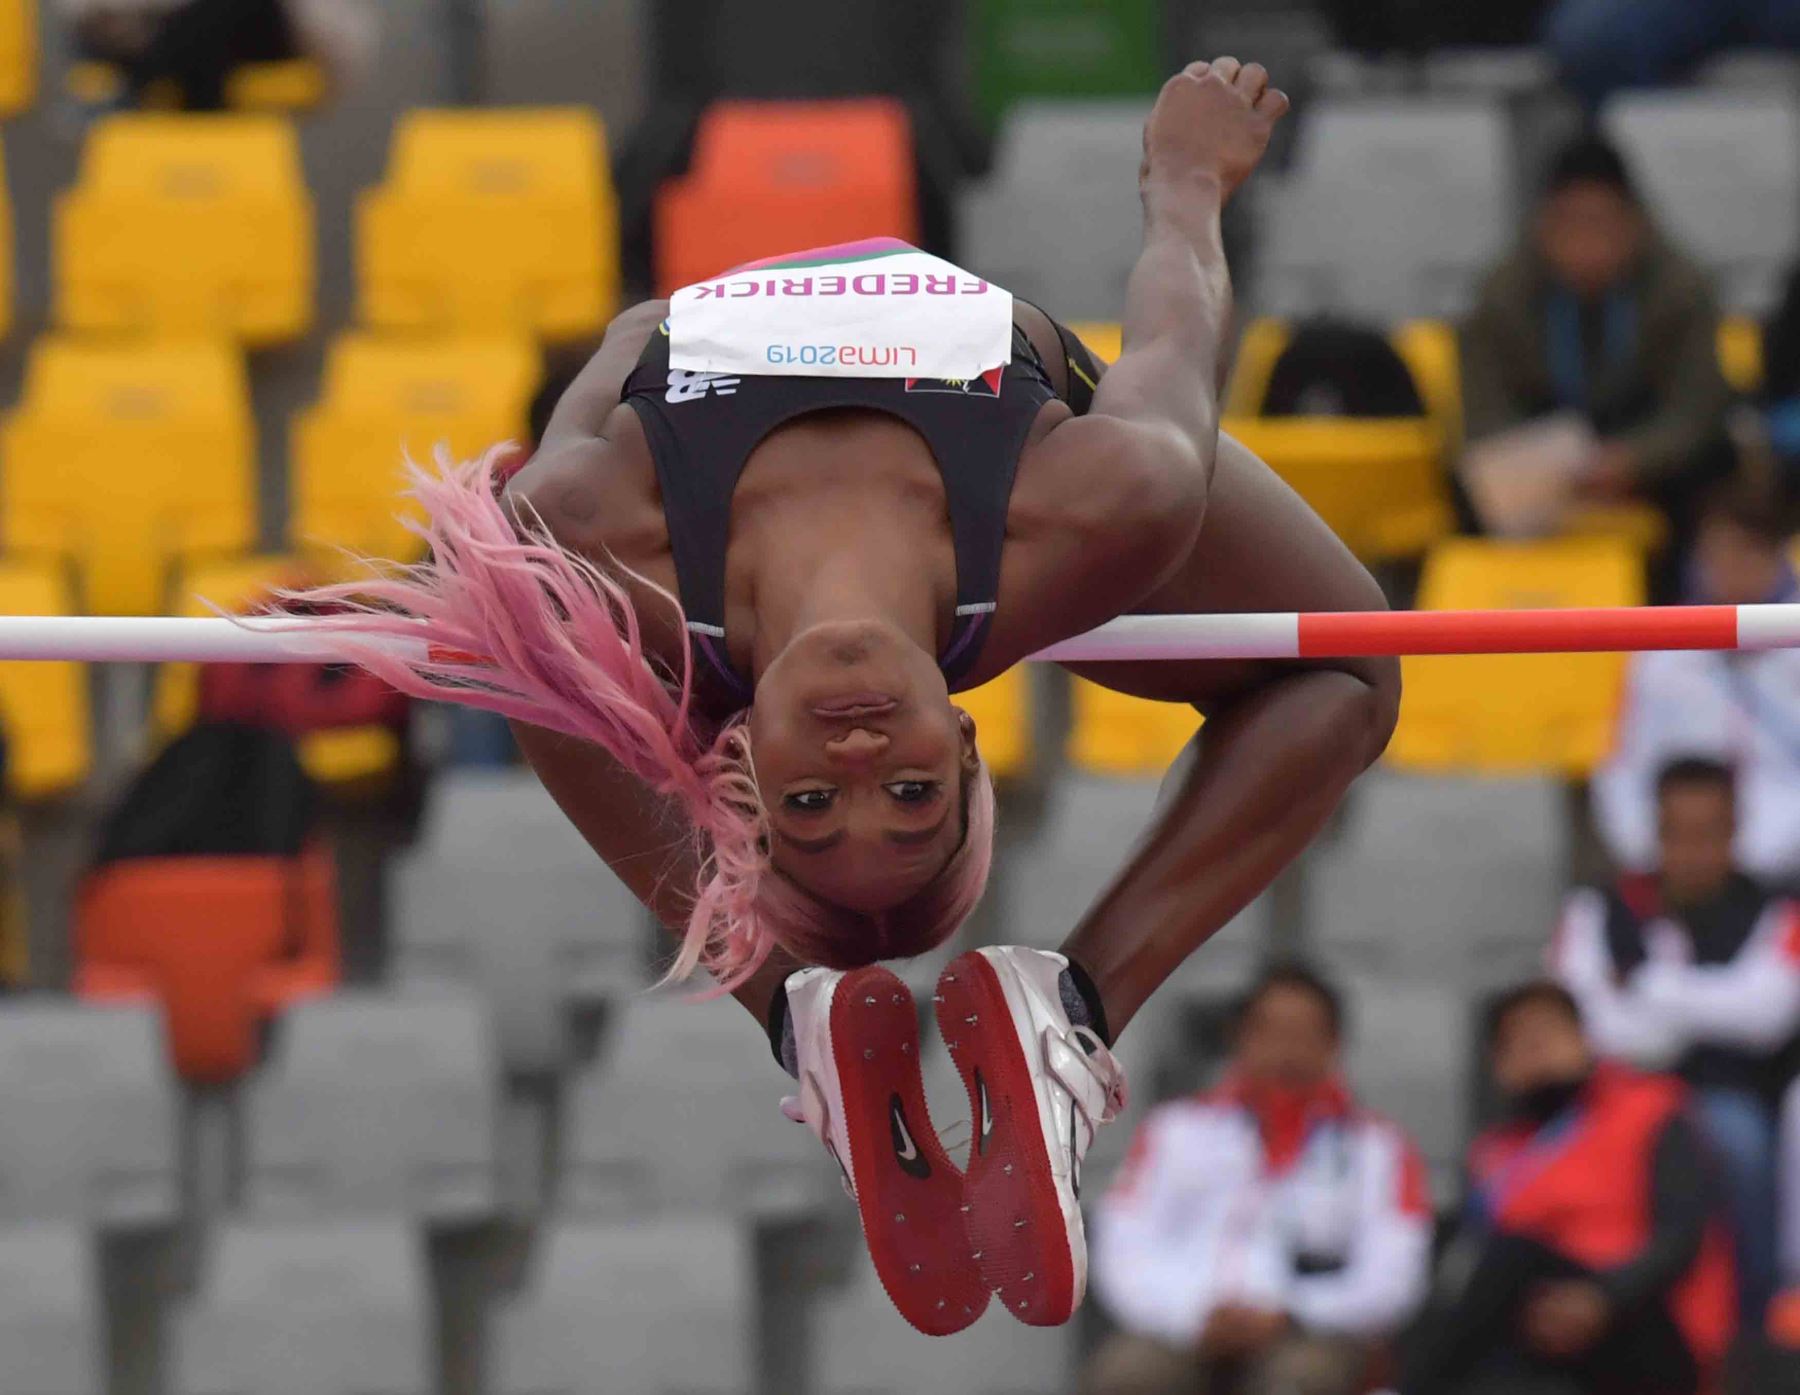 Priscilla Frederick de Antigua y Barbuda compite en la final de salto de altura femenino de atletismo durante los Juegos Panamericanos de Lima 2019. AFP